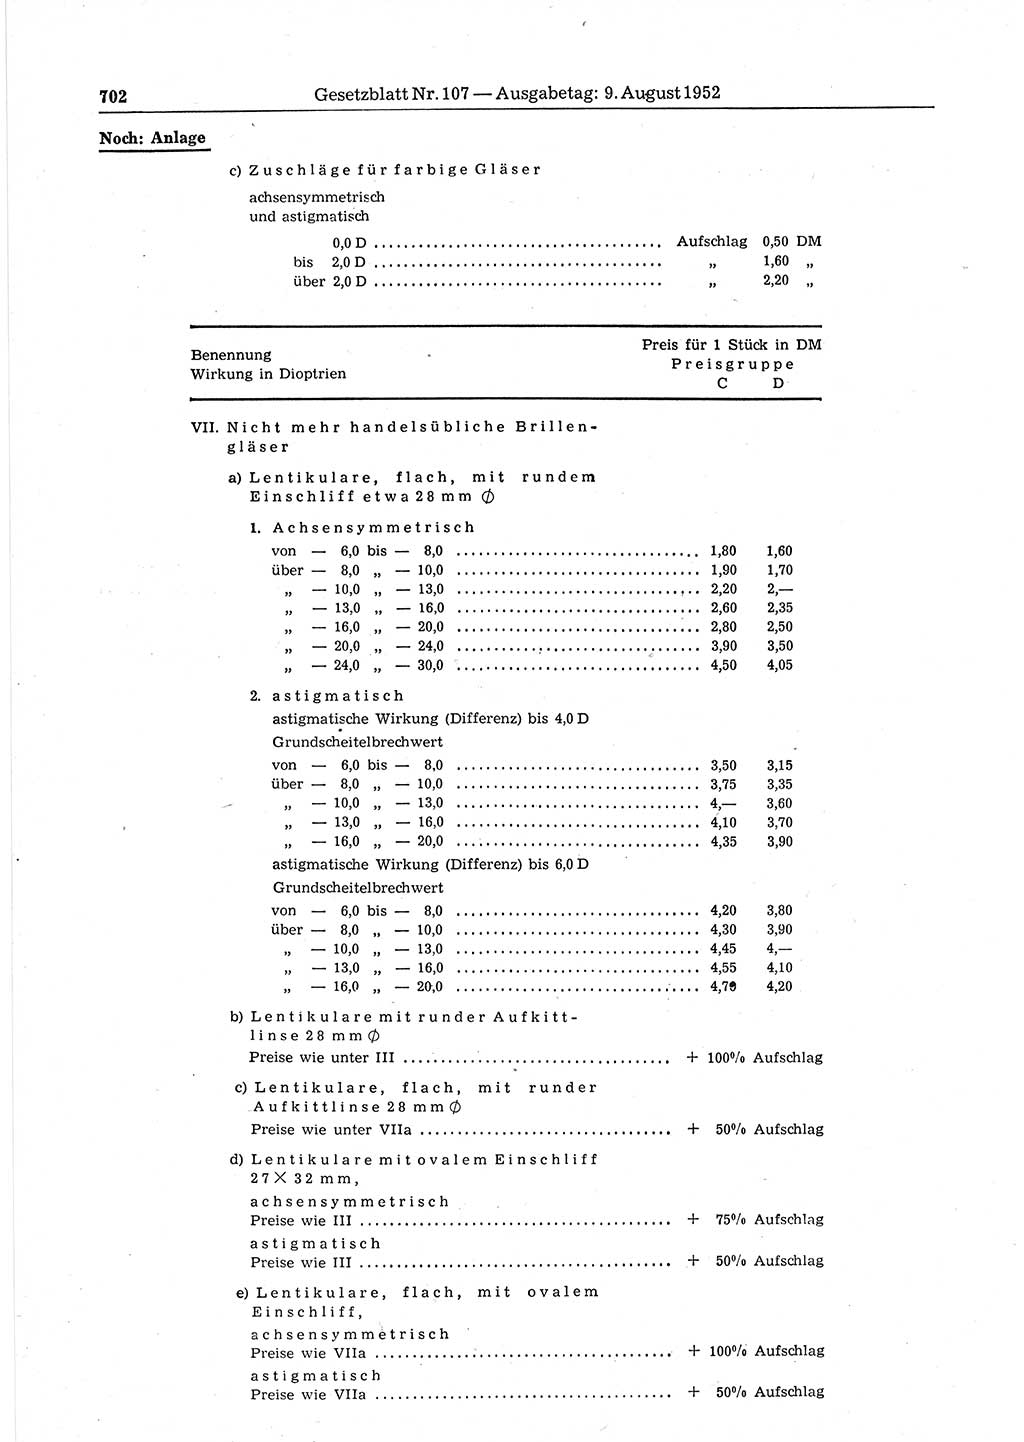 Gesetzblatt (GBl.) der Deutschen Demokratischen Republik (DDR) 1952, Seite 702 (GBl. DDR 1952, S. 702)